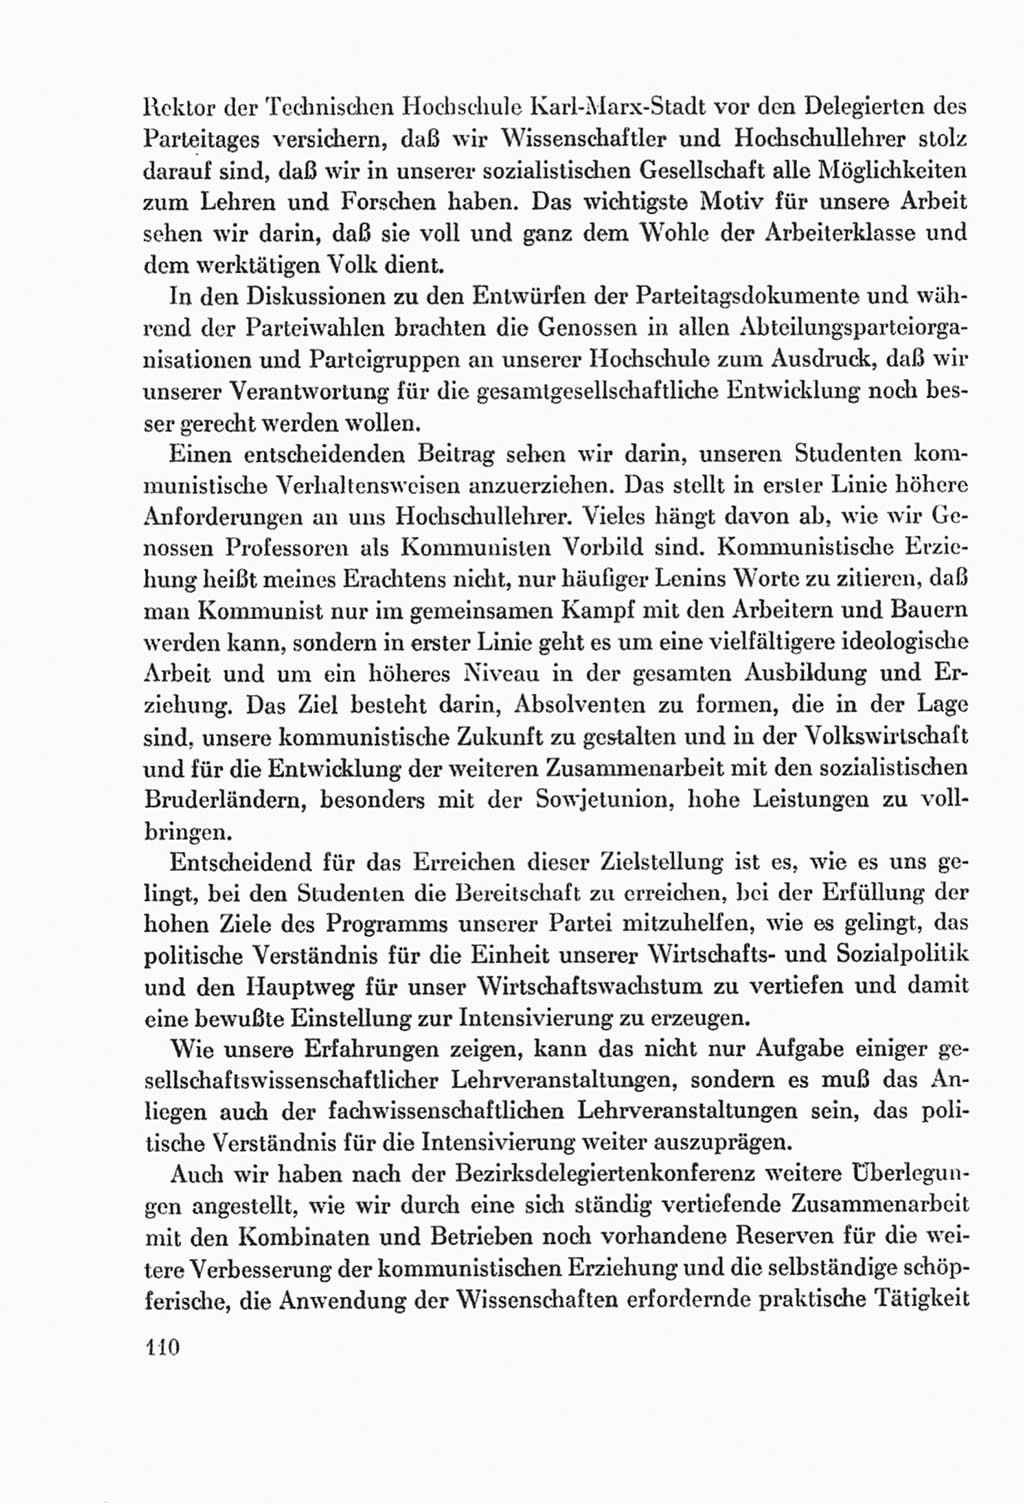 Protokoll der Verhandlungen des Ⅸ. Parteitages der Sozialistischen Einheitspartei Deutschlands (SED) [Deutsche Demokratische Republik (DDR)] 1976, Band 2, Seite 110 (Prot. Verh. Ⅸ. PT SED DDR 1976, Bd. 2, S. 110)